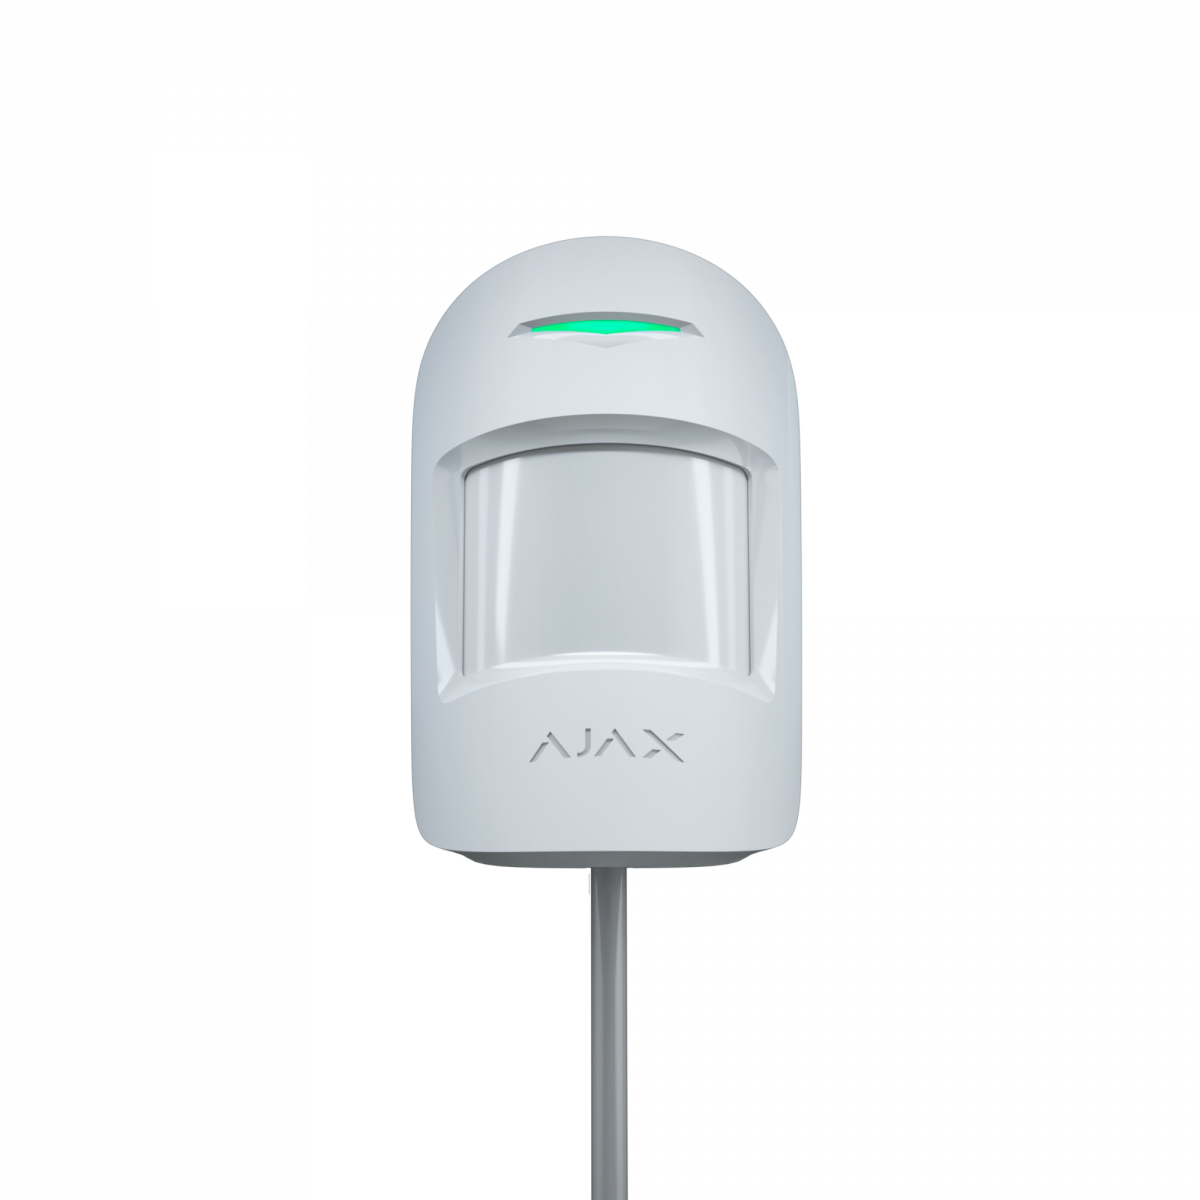 Купить Проводной датчик движения Ajax MotionProtect Fibra белый